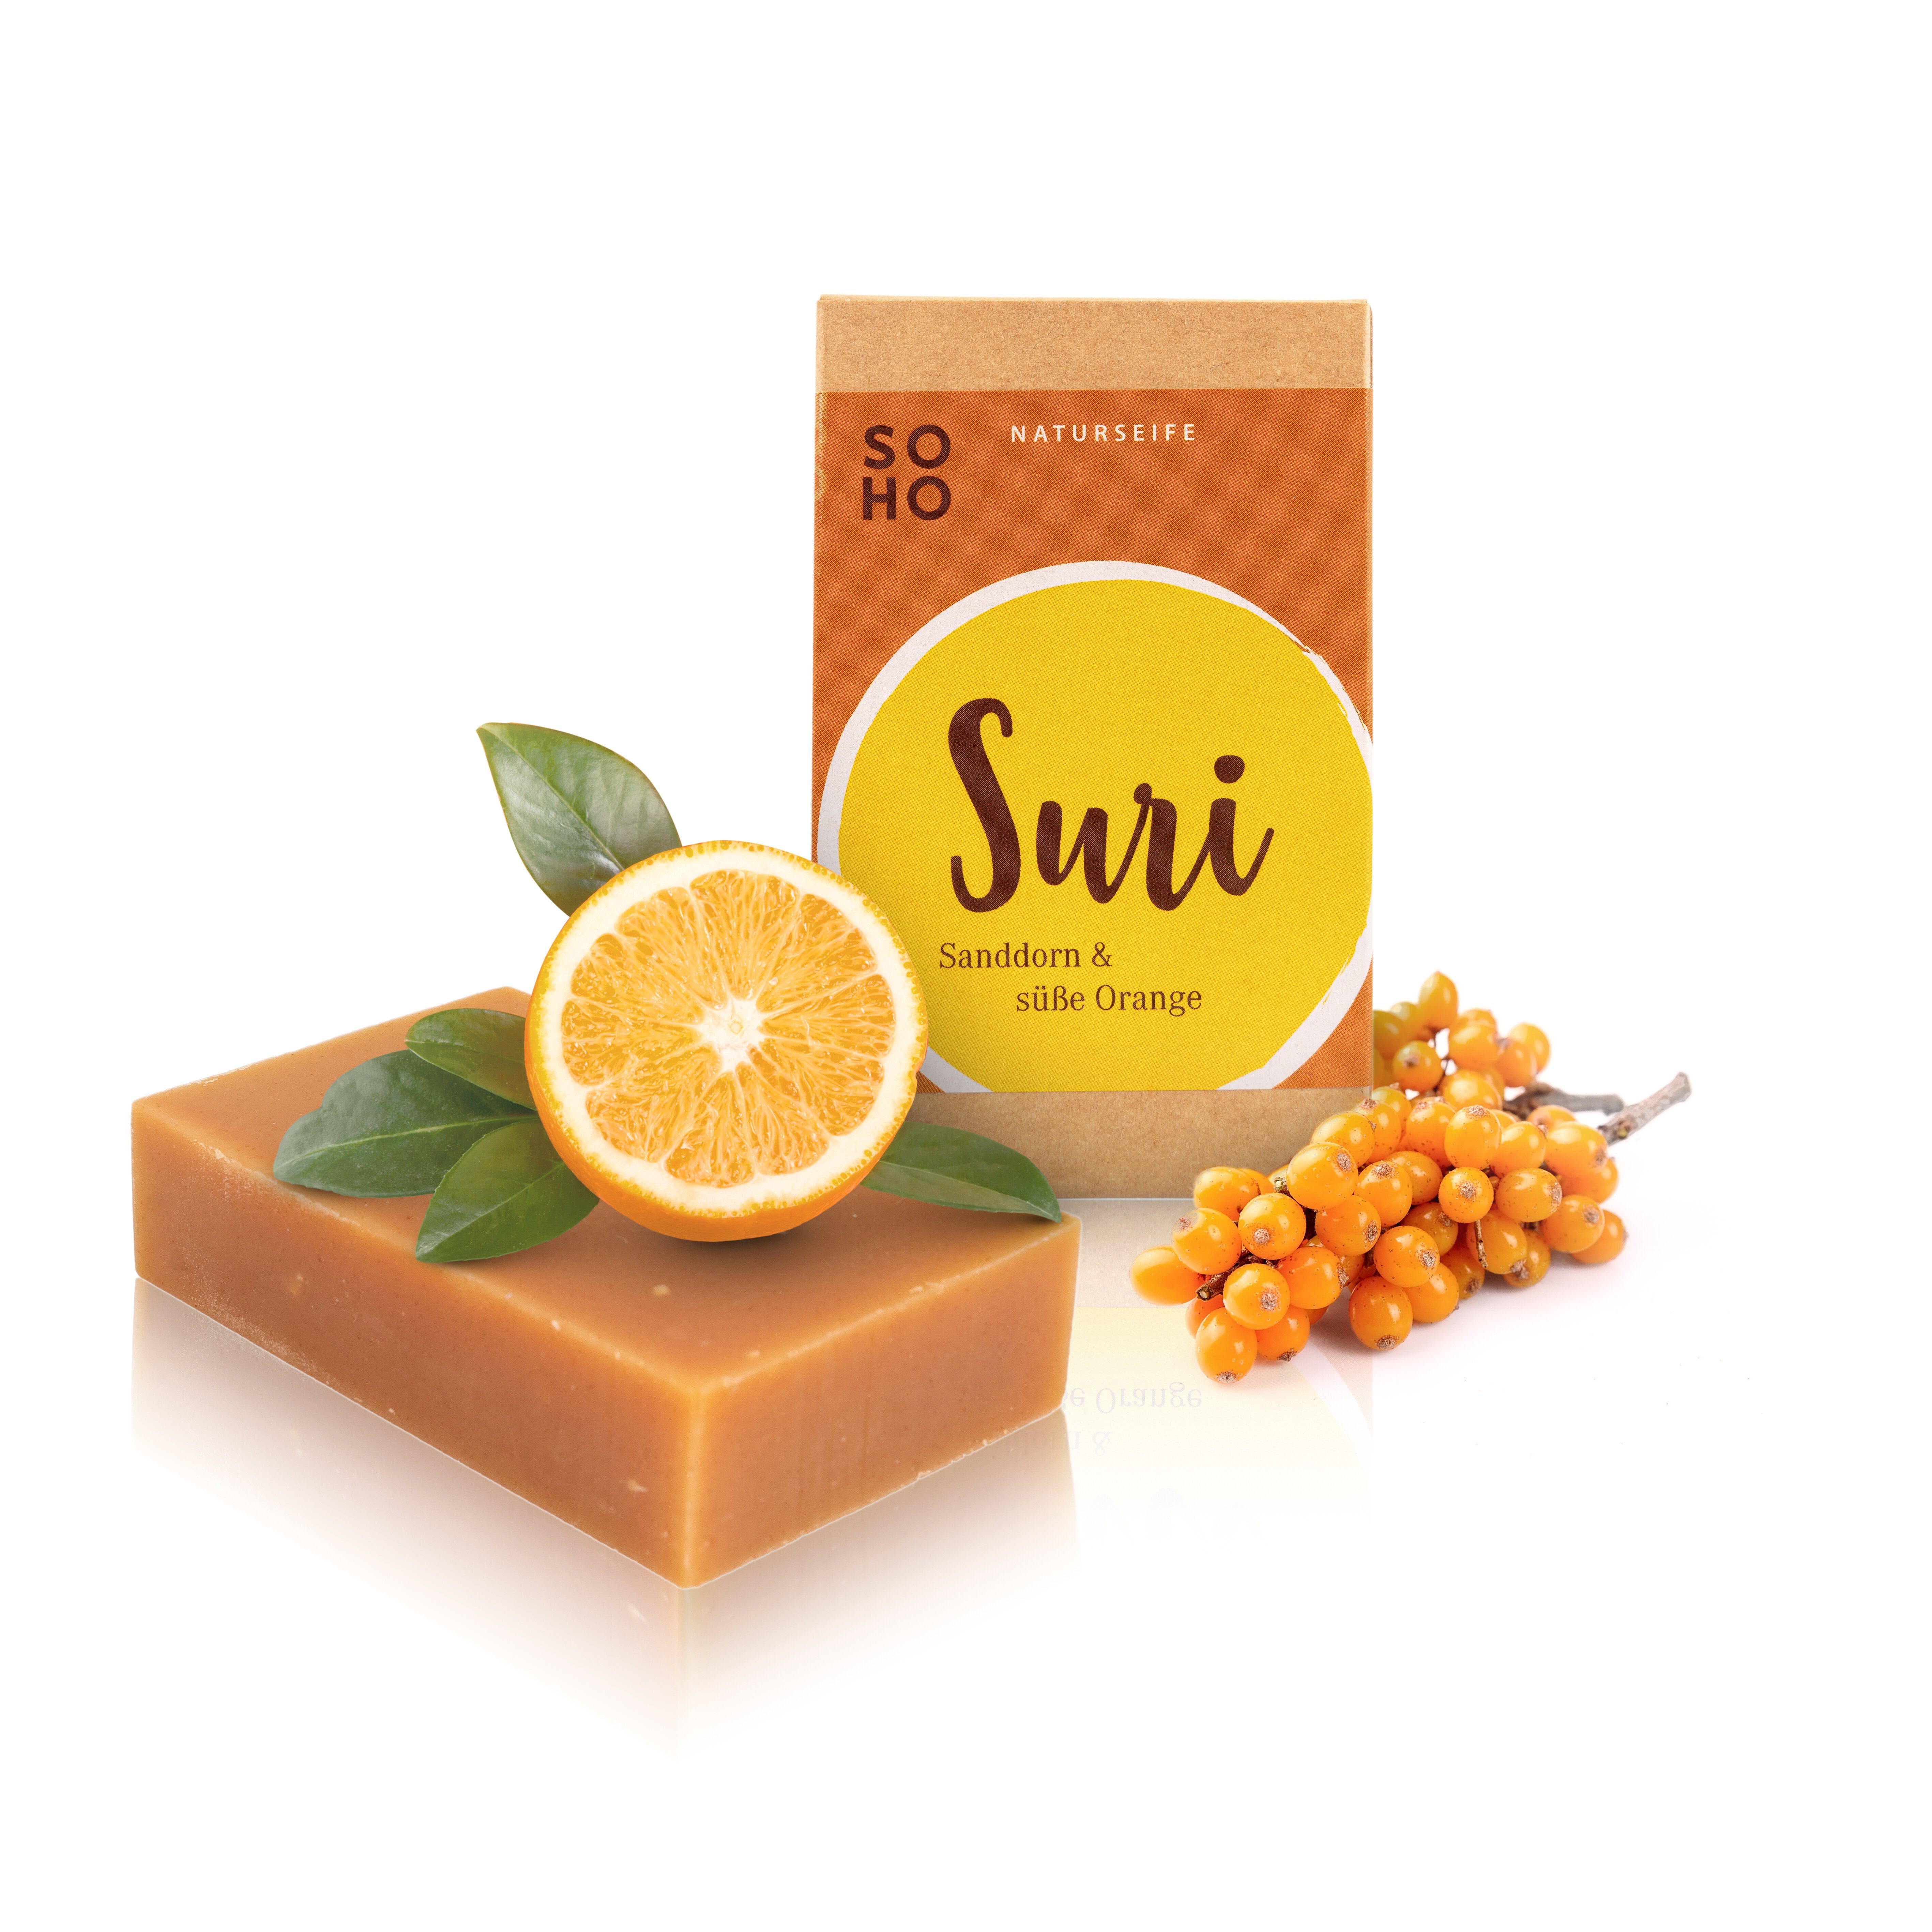 SOHO Naturkosmetik Feste Duschseife SURI Fruchtig, cremige Duschpflege mit Sanddornextrakt & süßer Orange